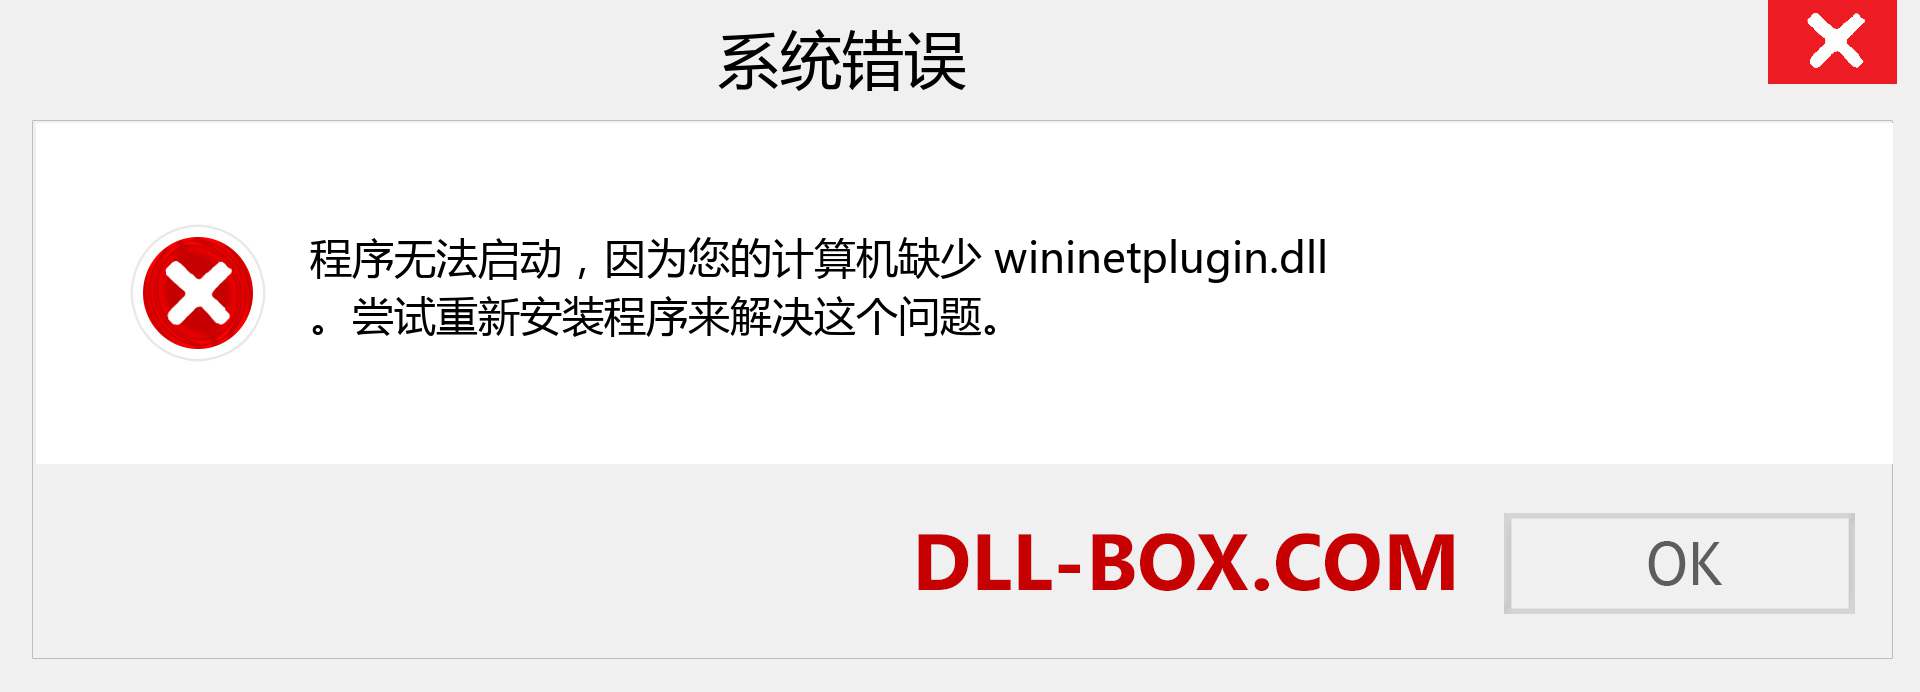 wininetplugin.dll 文件丢失？。 适用于 Windows 7、8、10 的下载 - 修复 Windows、照片、图像上的 wininetplugin dll 丢失错误